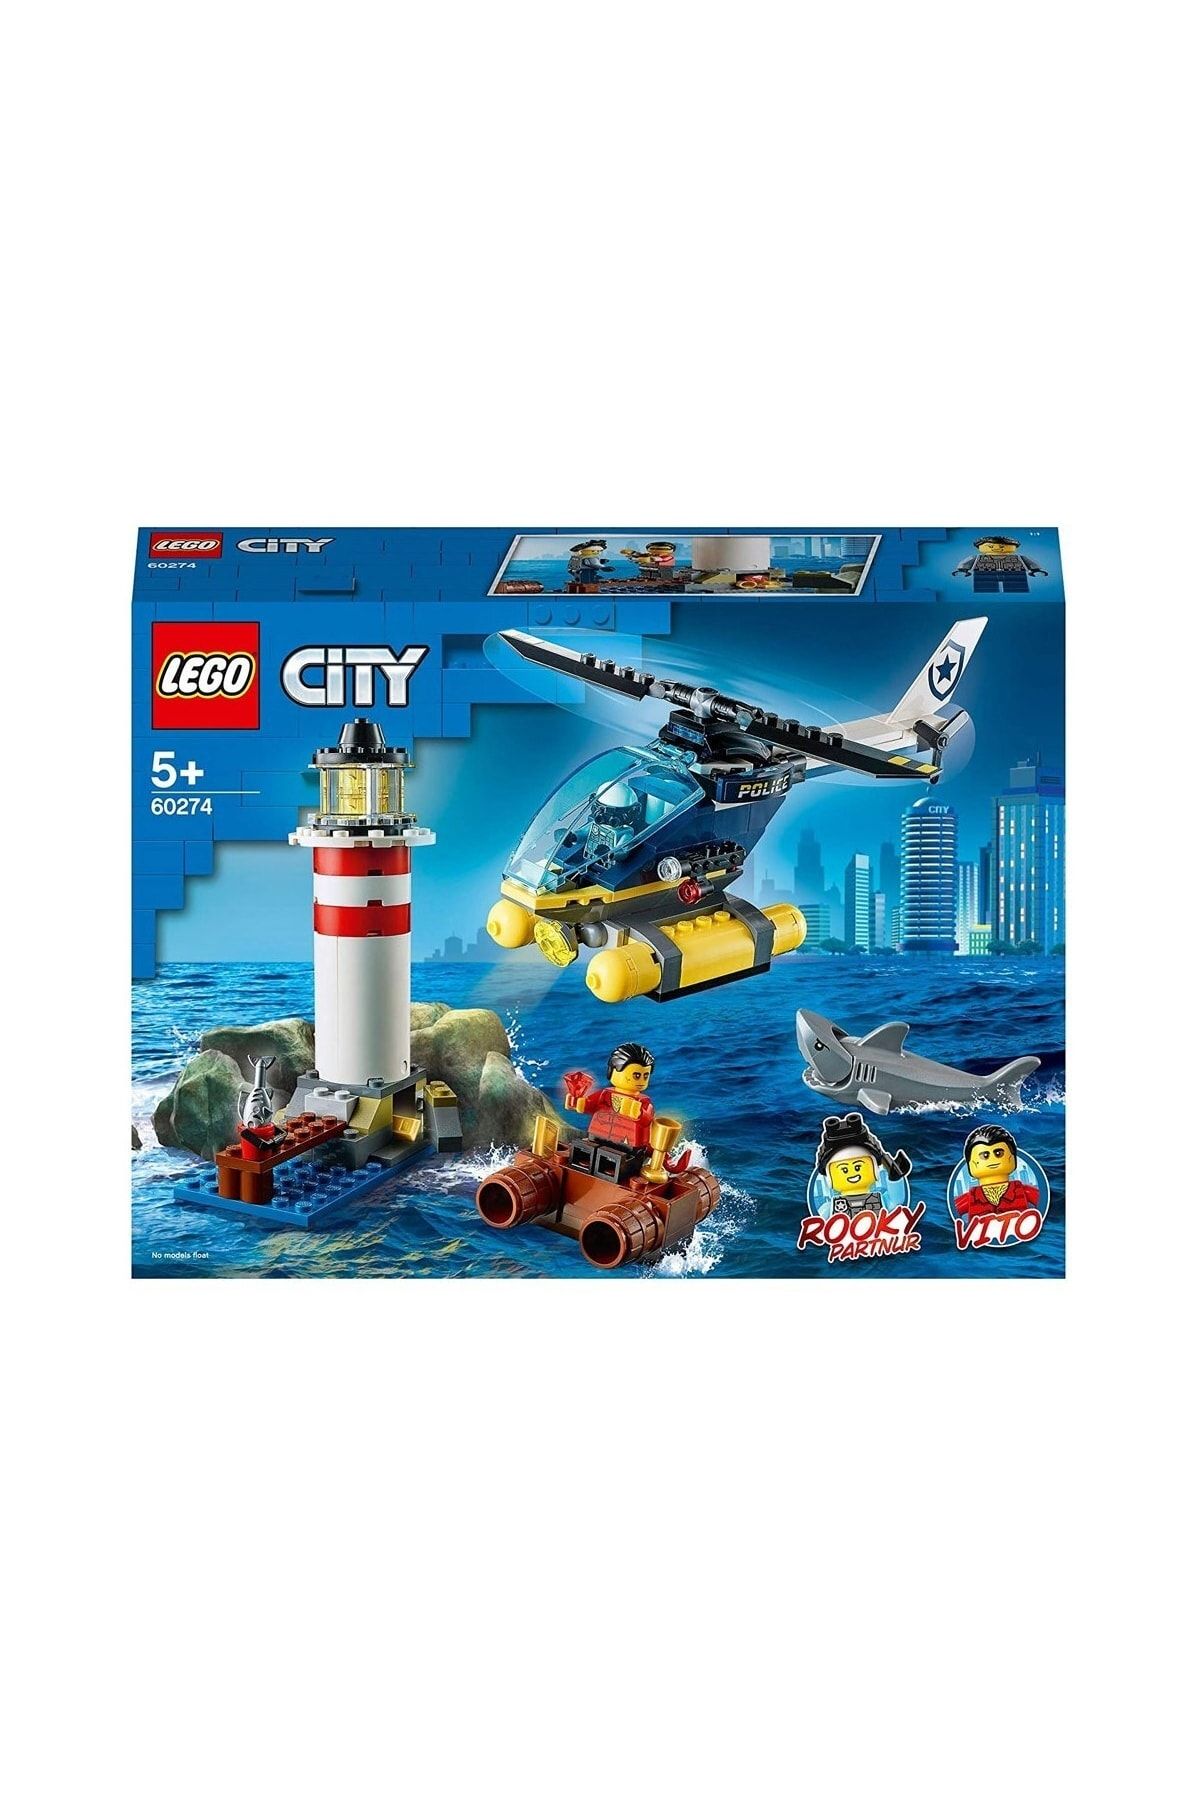 DEDE 60274 Lego® City Elit Polis Deniz Feneri Operasyonu /189 Parça /+5 Yaş